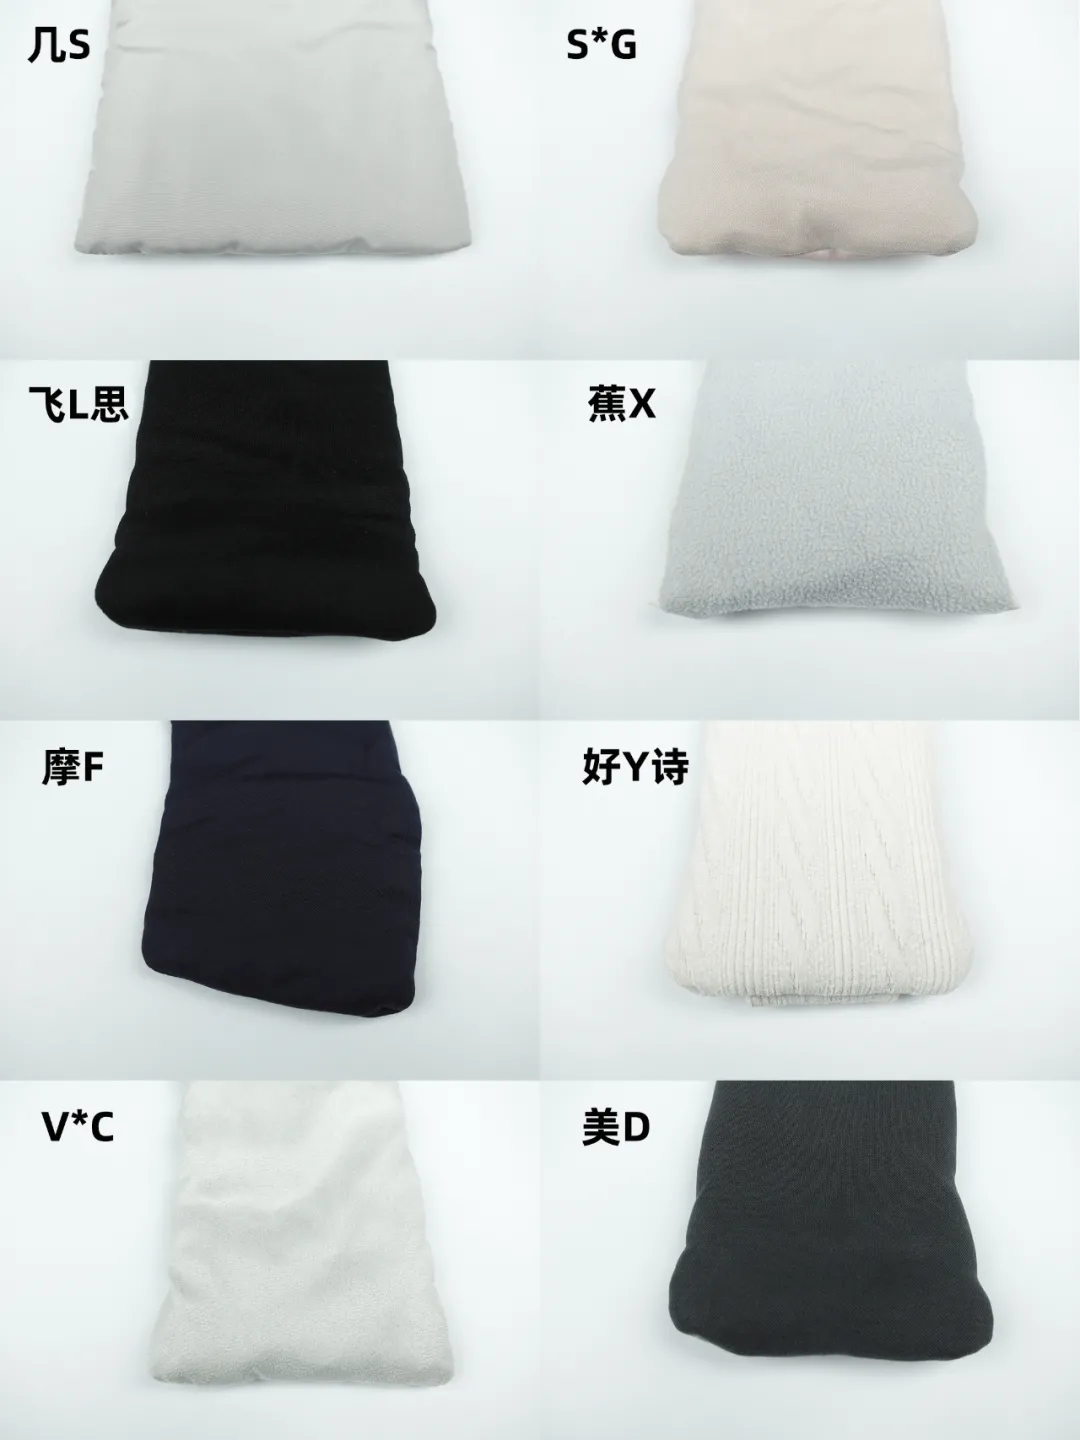 8款发热围巾测评：4款最低档温度＞44°C，小心低温烫伤